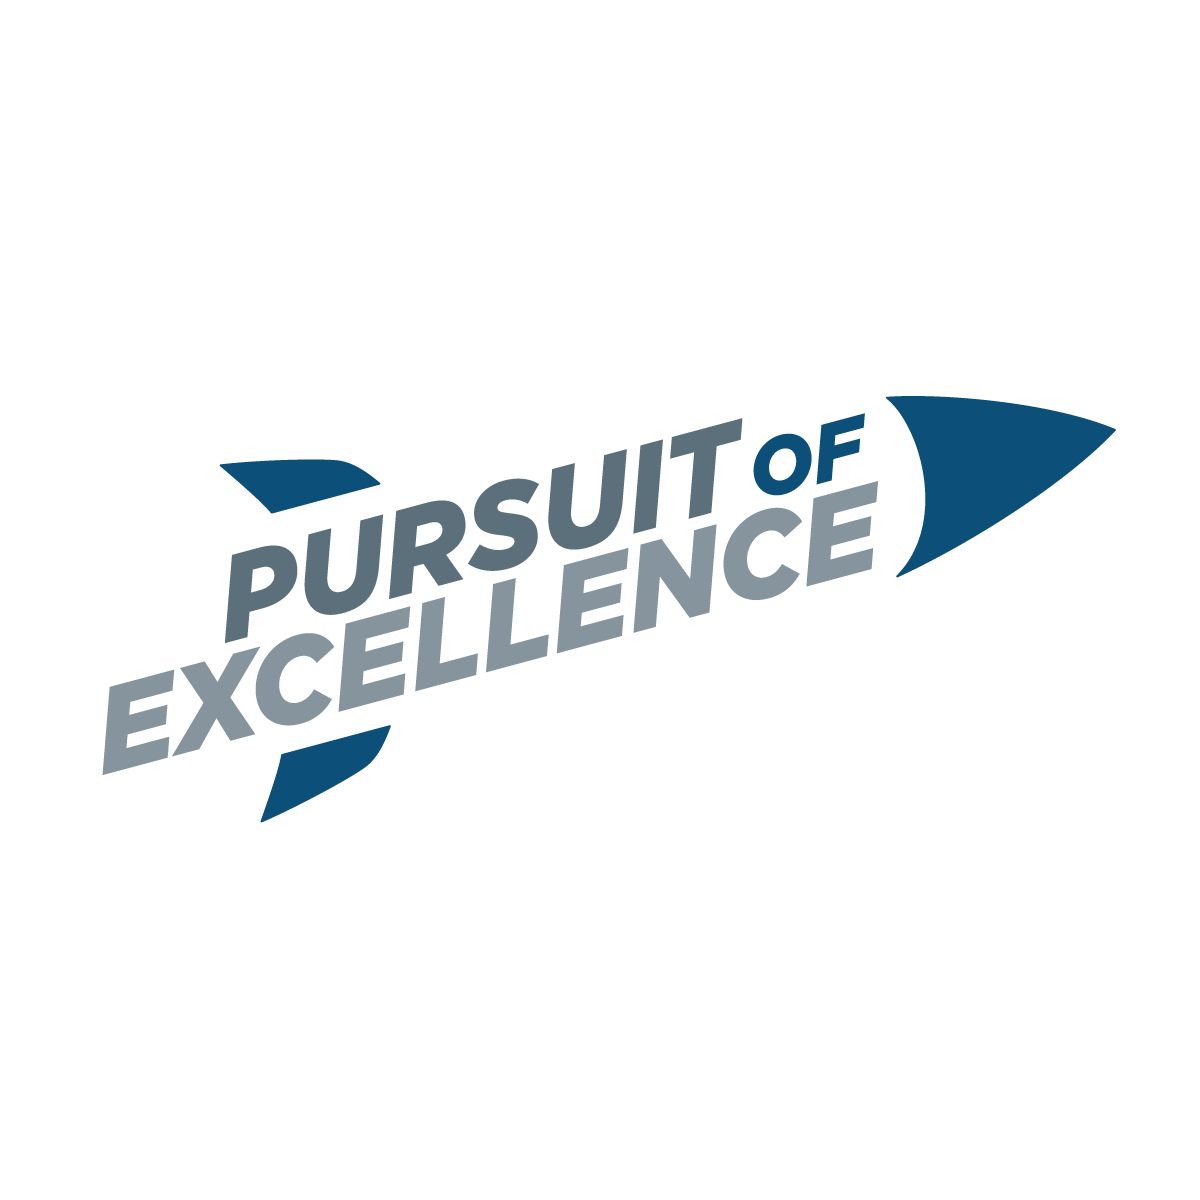 pursuit of excellence core value logo